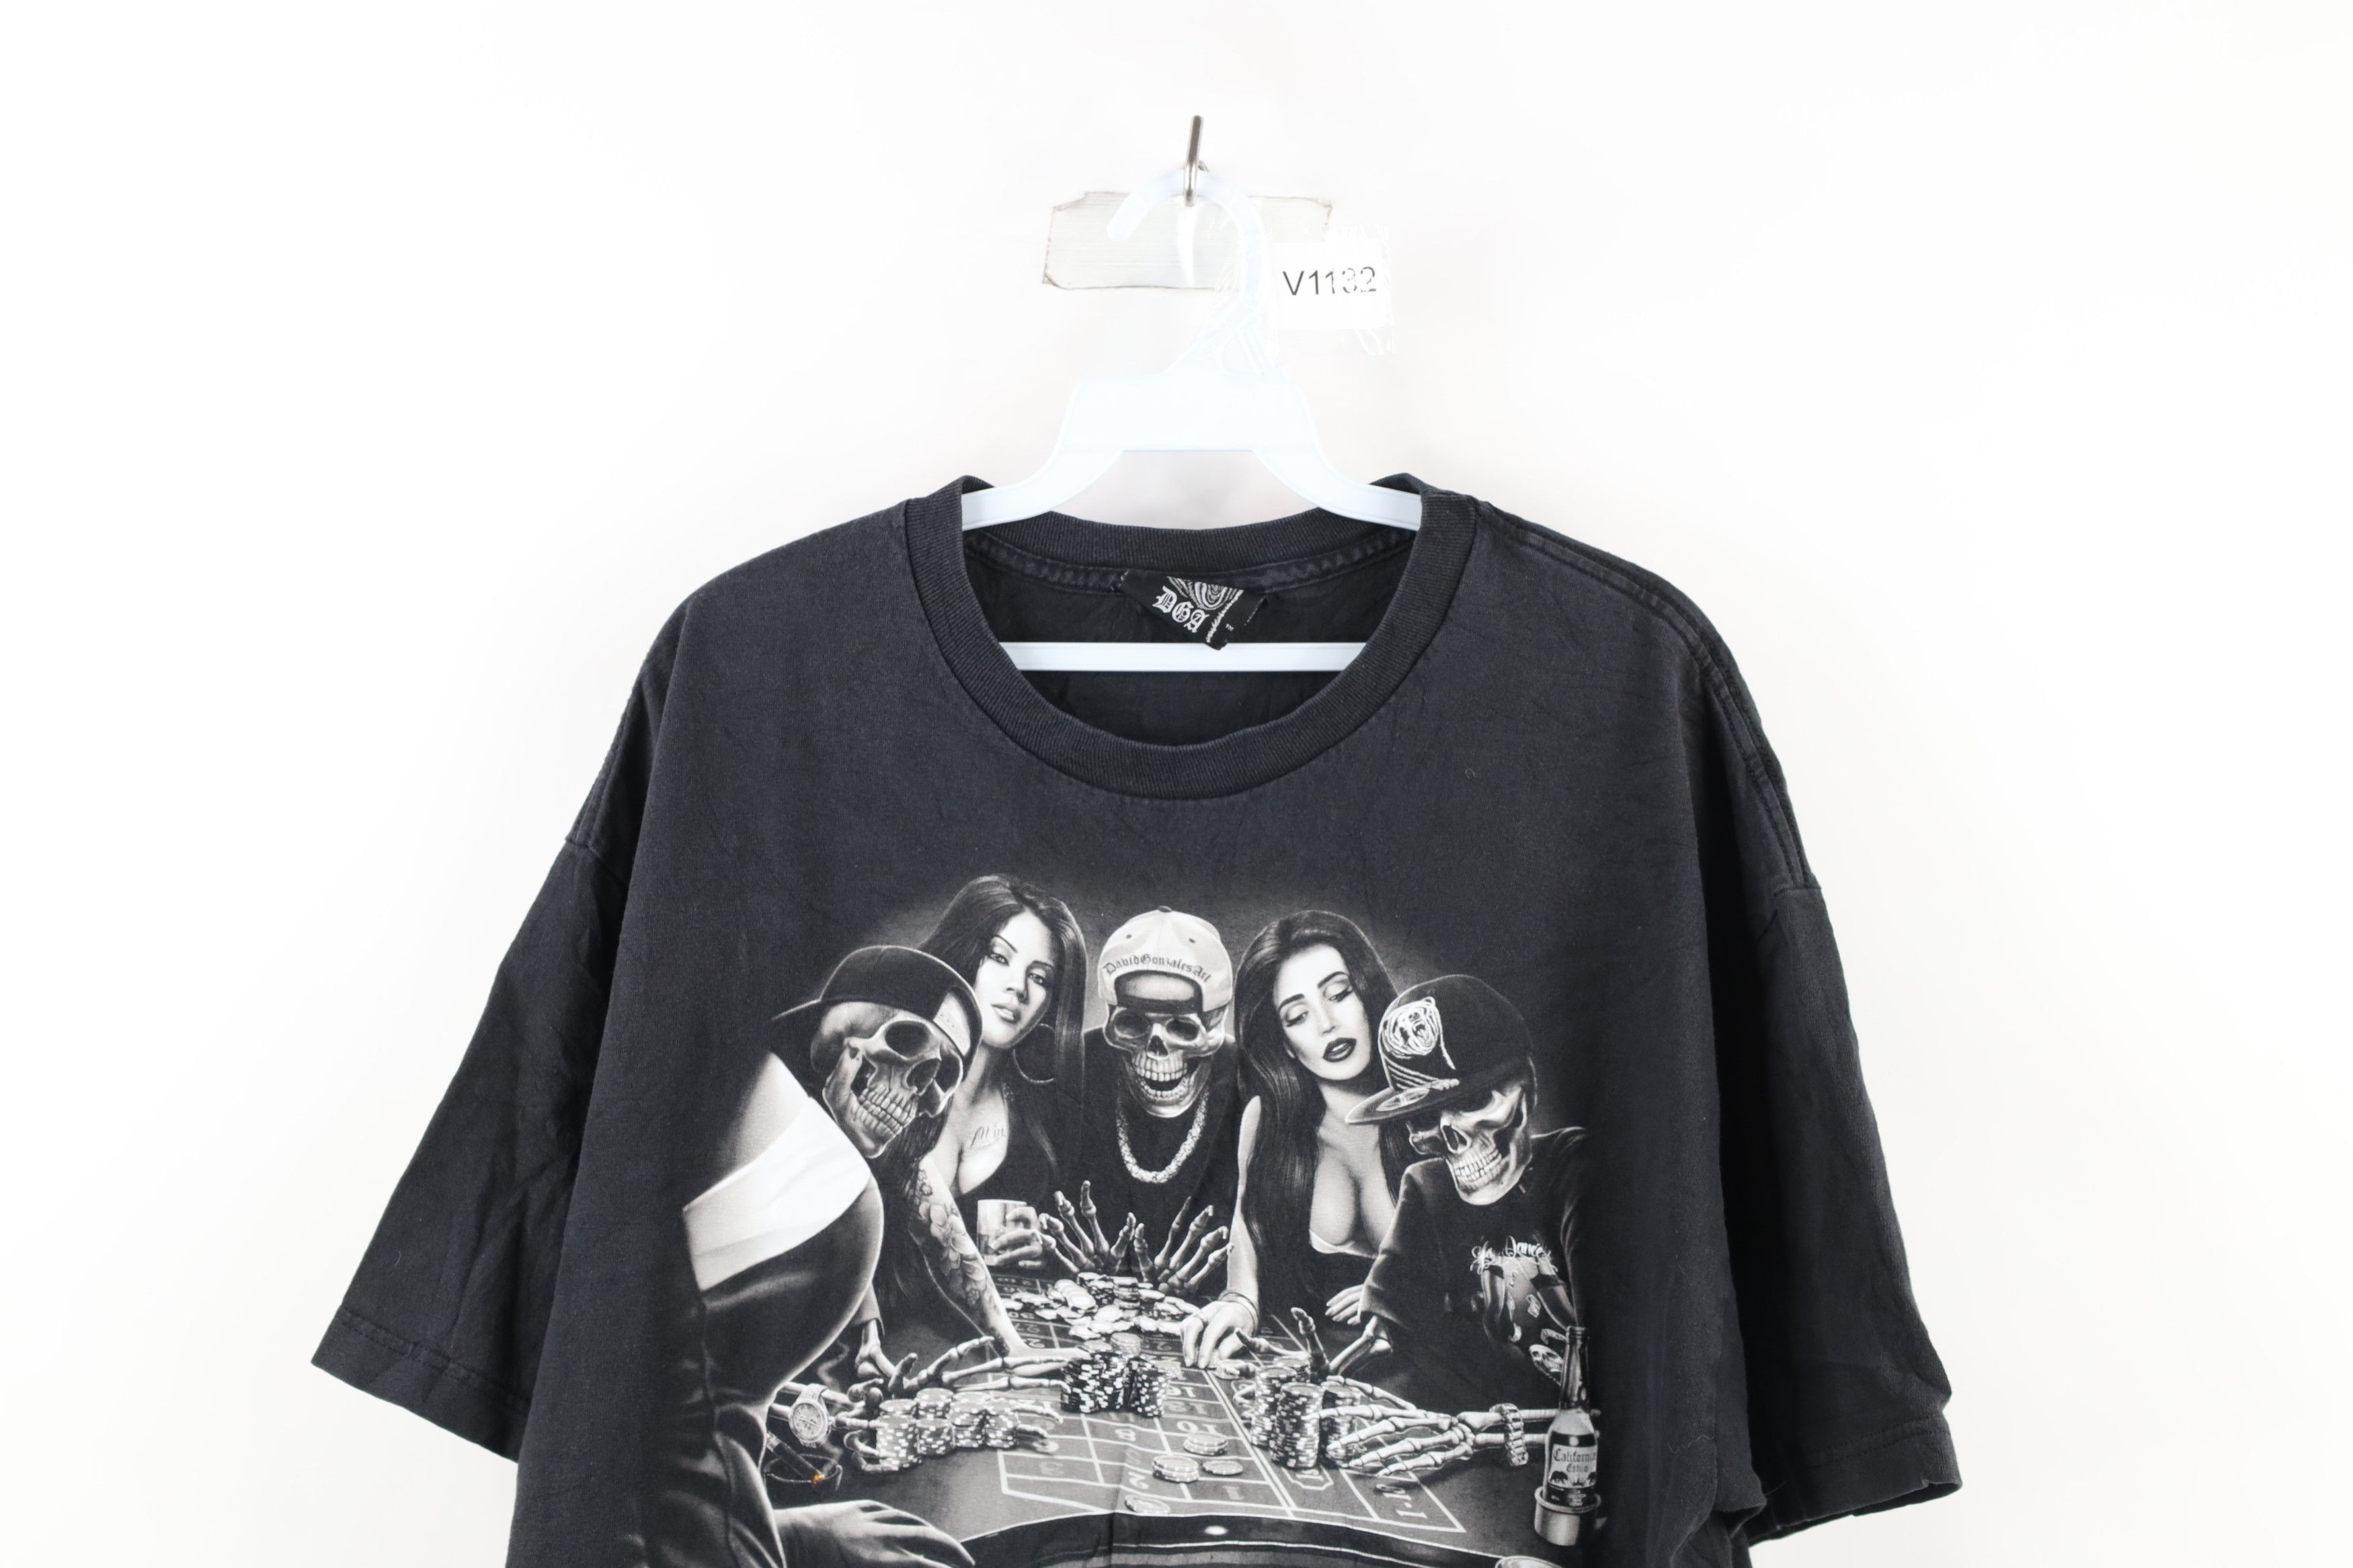 Vintage Streetwear Girl Gambling Skeleton Hip Hop T-Shirt Black Size US XL / EU 56 / 4 - 2 Preview